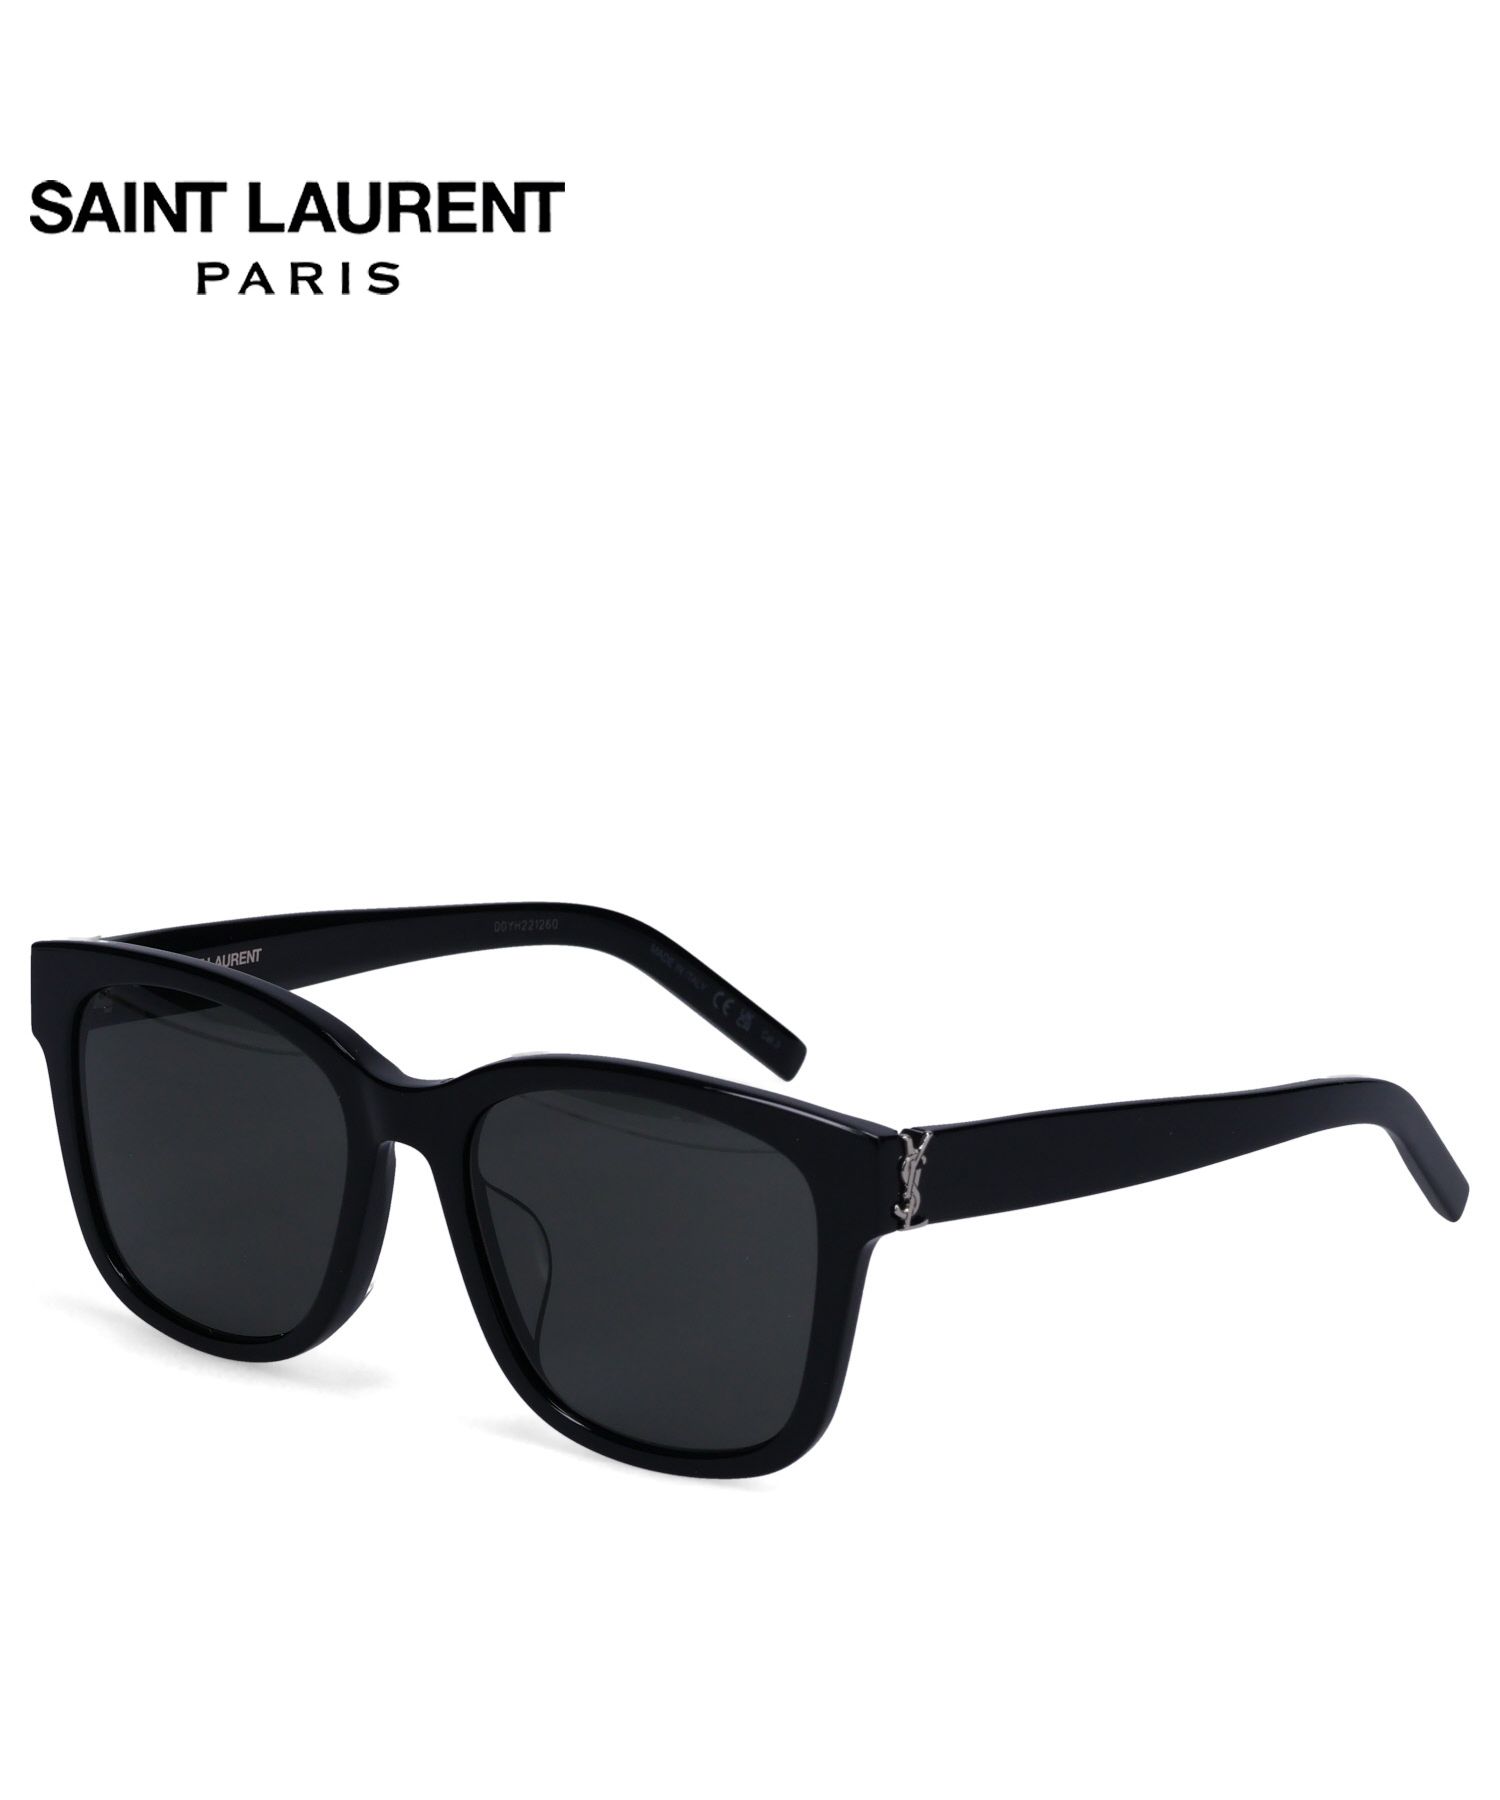 購入を考えているのですがSaint laurent paris sunglasses